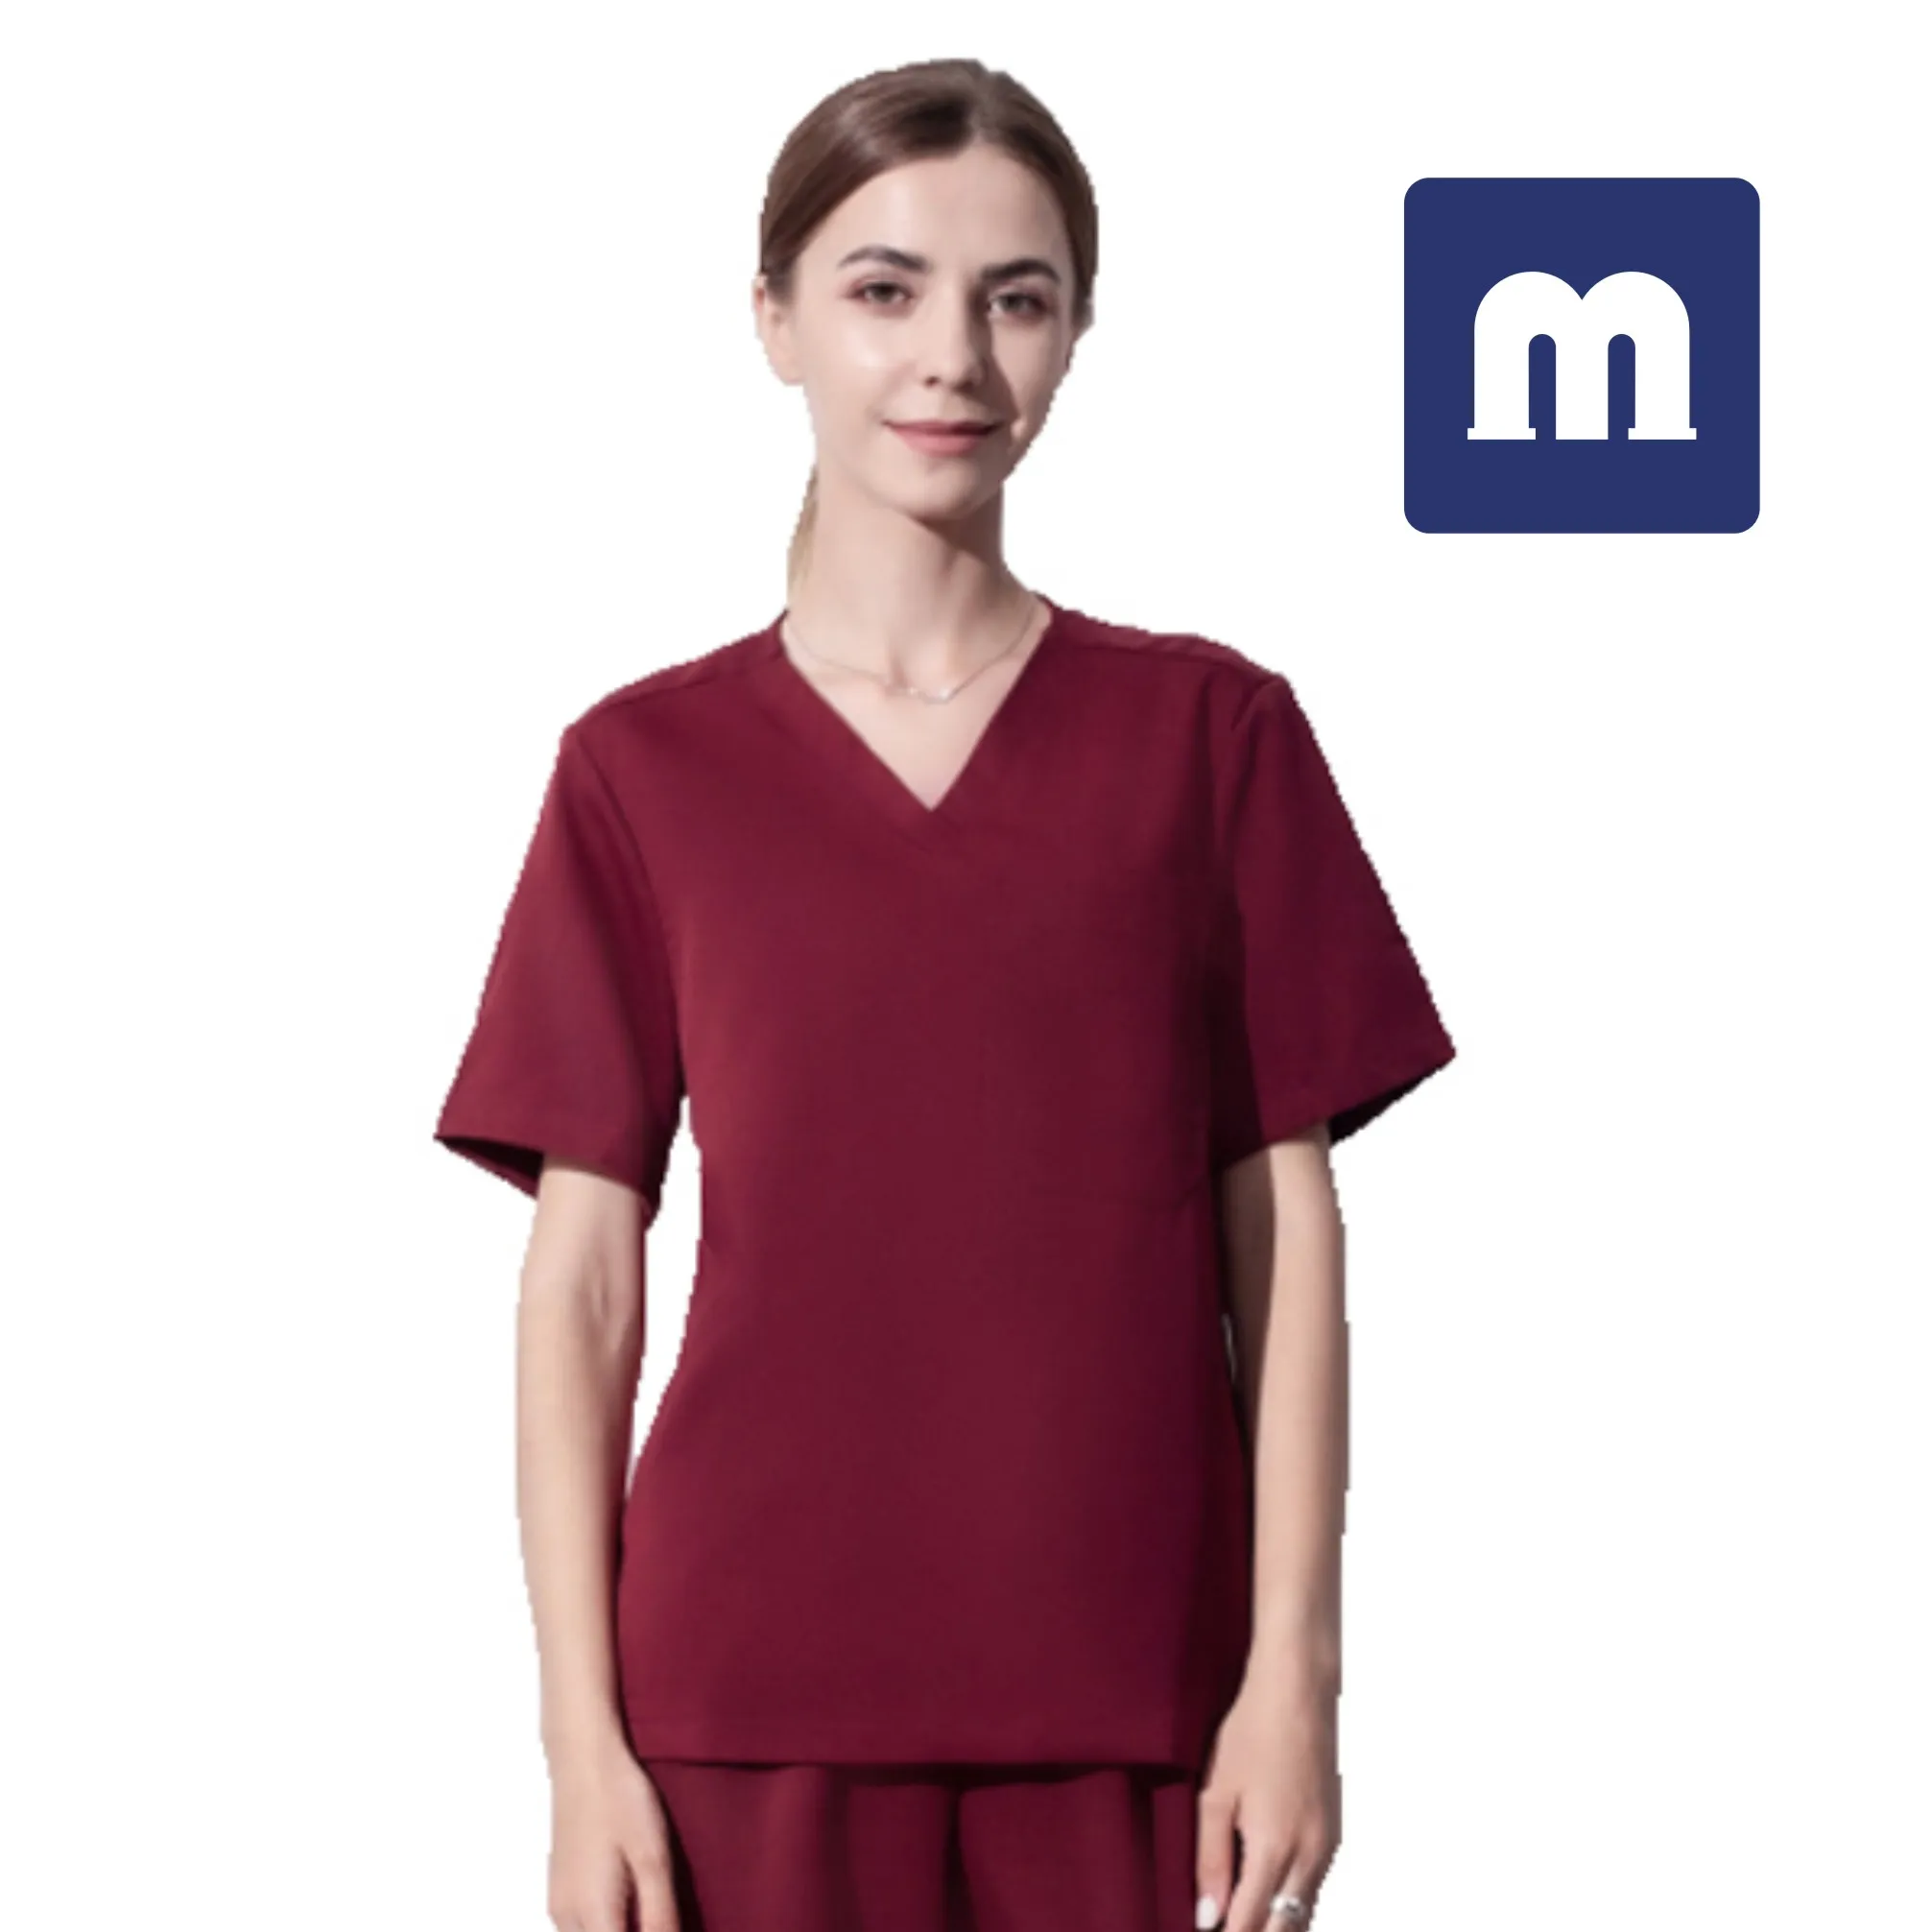 Medigo-050 tvåficka mandarin krage scrubs topp + byxor för kvinnor avslappnad passform, super mjuk stretch, anti-rynk medicinsk scrubs sjukhus uniform skjorta topp + byxor